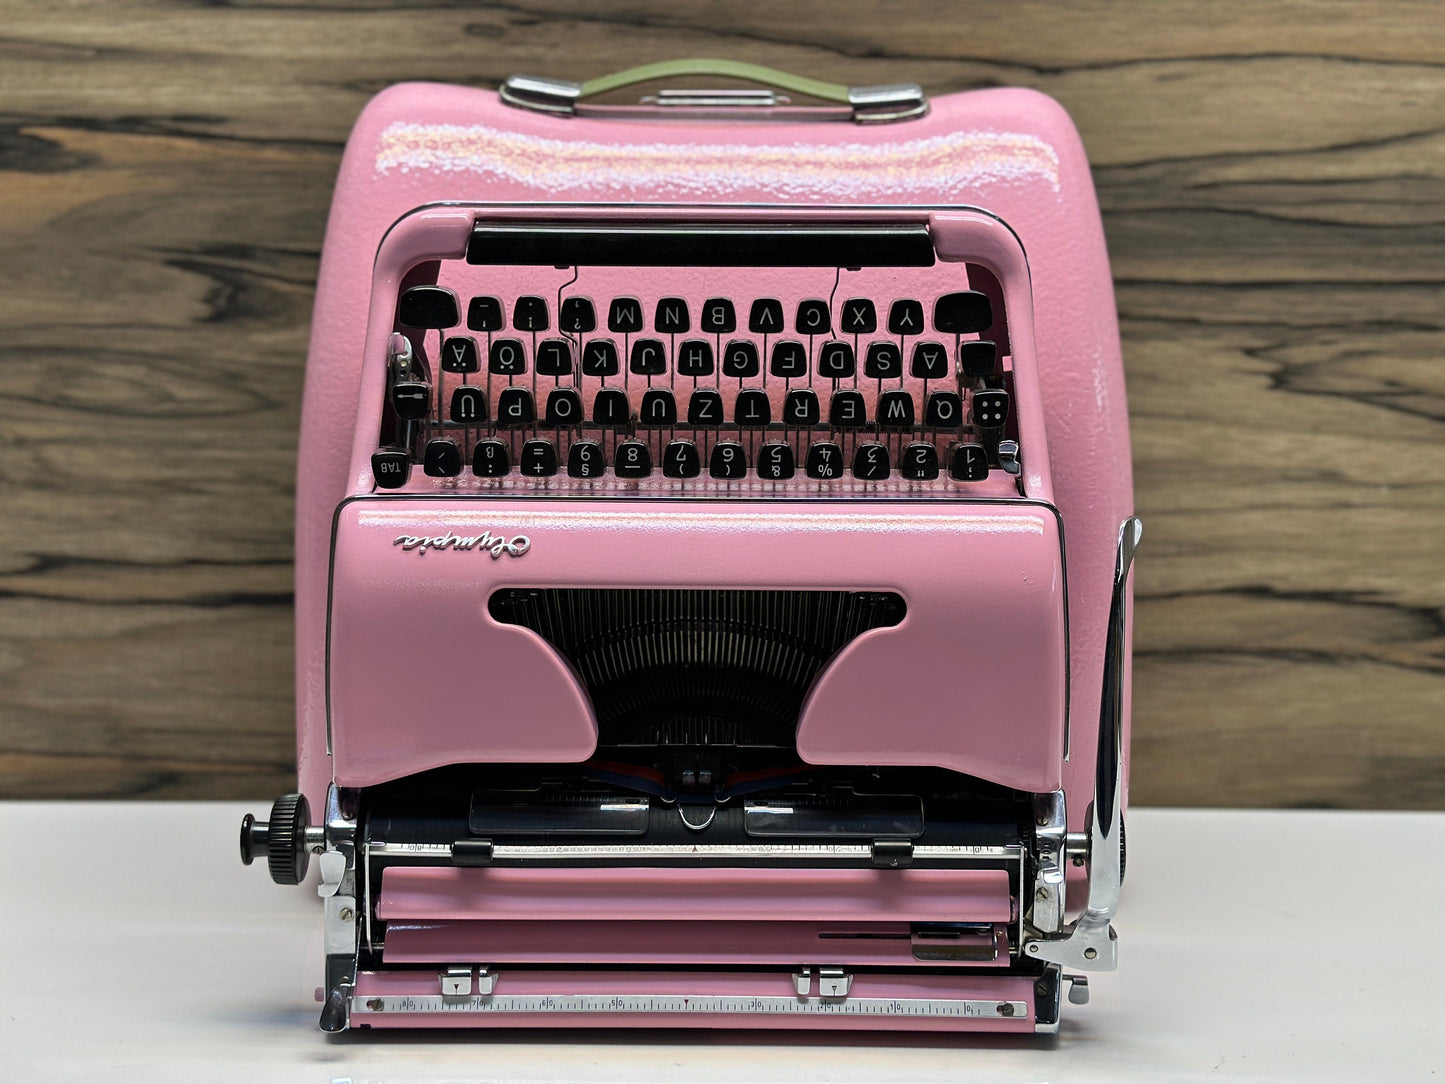 Olympia SM3 Typewriter, Pink Typewriter, Pink Bag Typewriter - Premium Barbie Gift / Vintage Pink Olympia SM3 Typewriter with Matching Pink